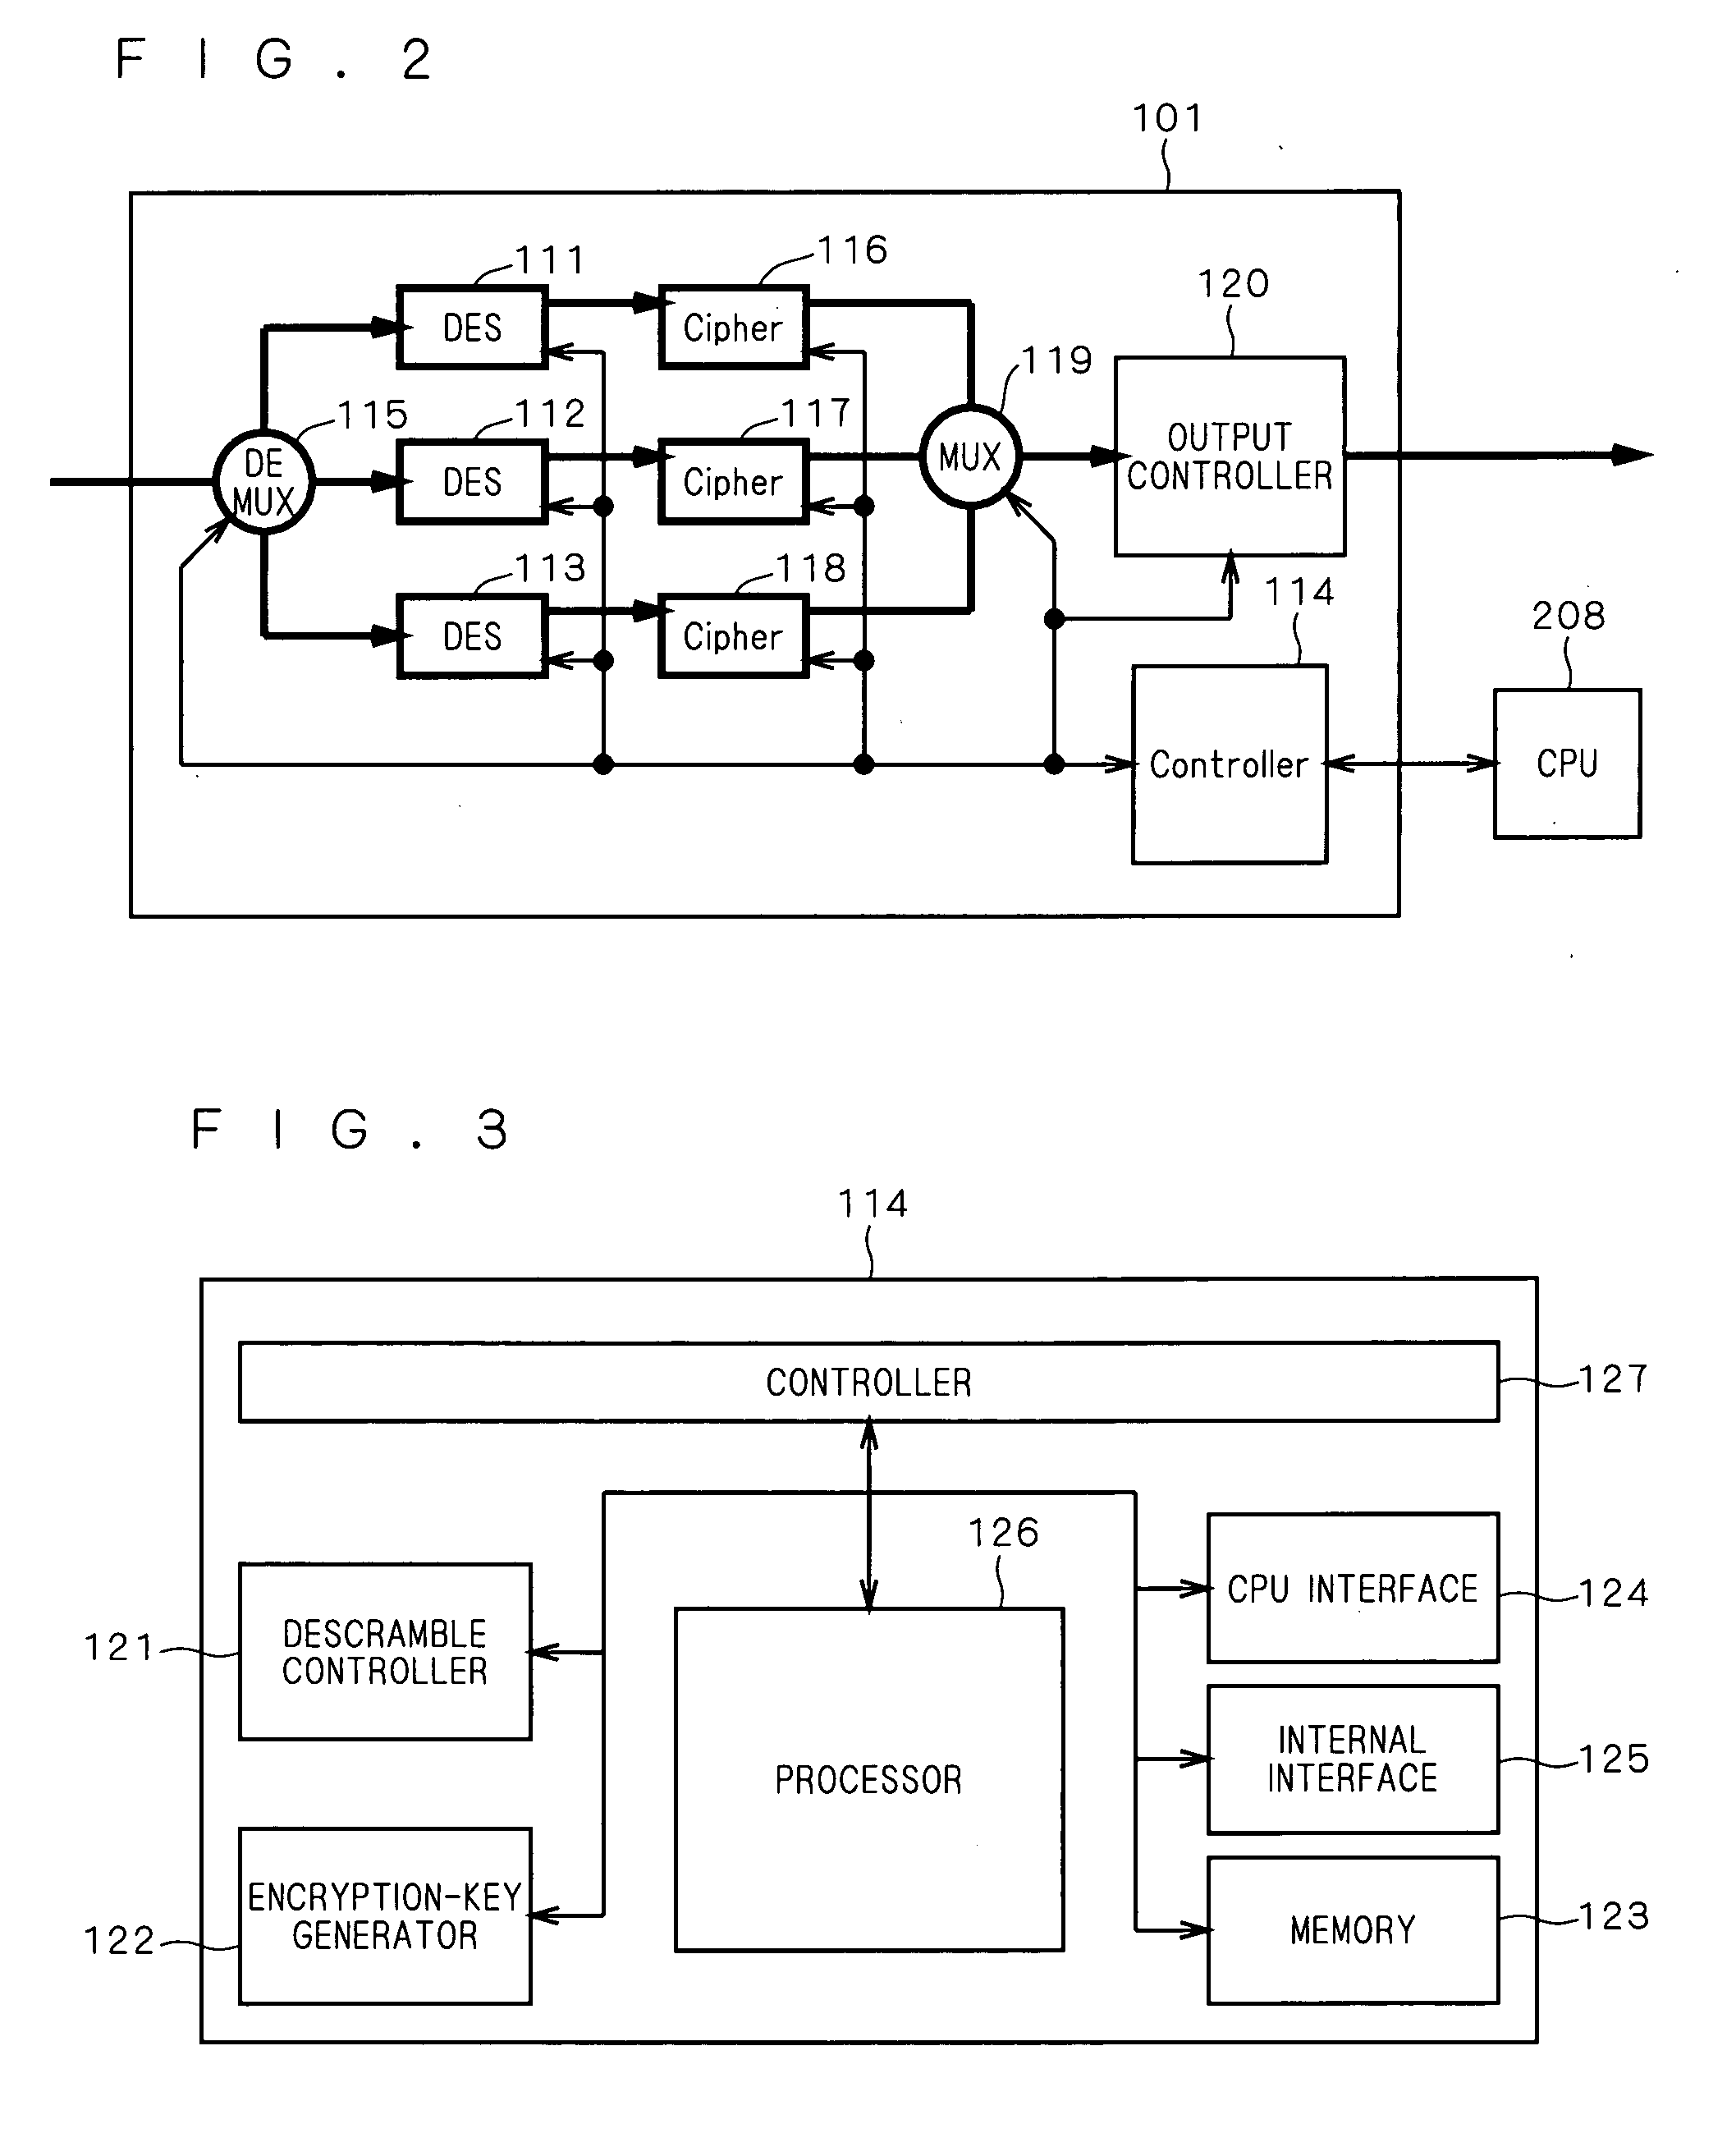 Multistream distributor and multi-descrambler